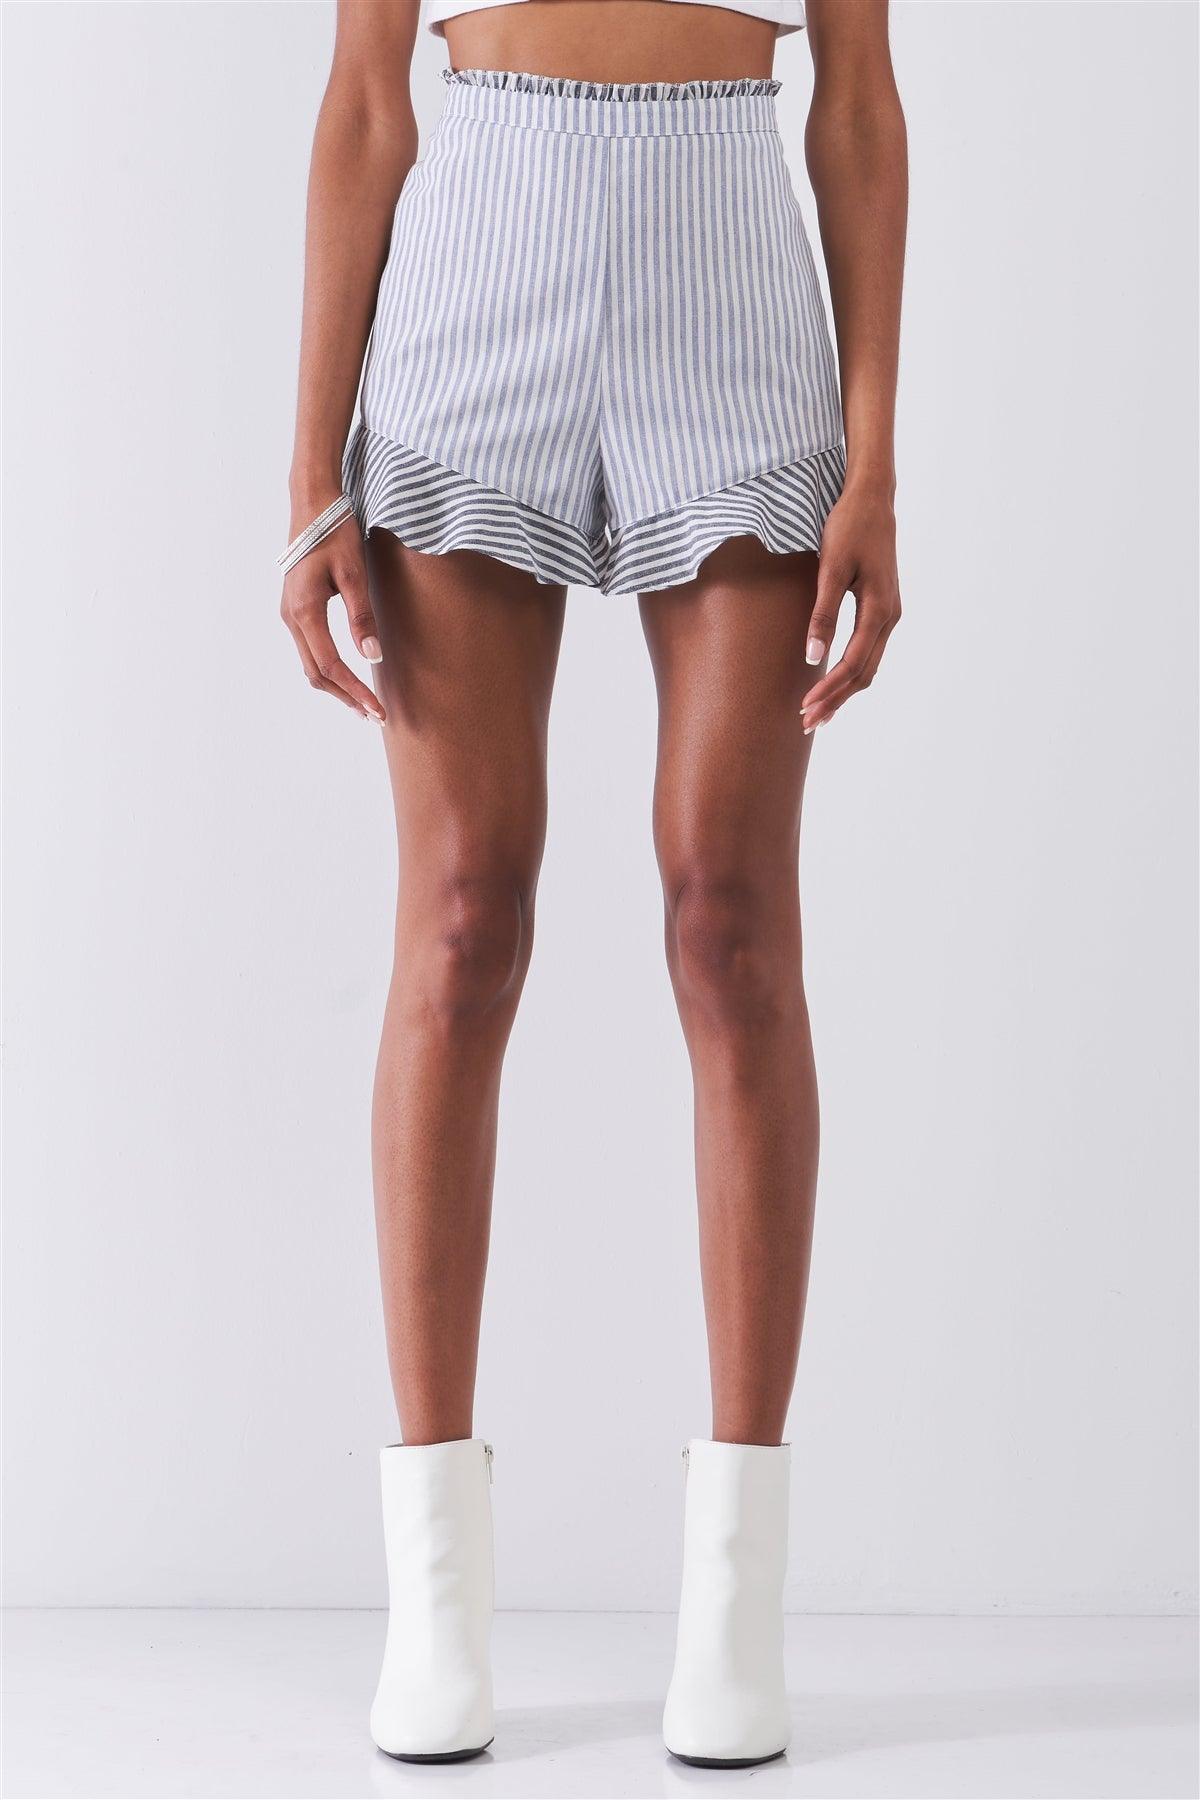 The Hamptons Vibe Blue & White Multi-Striped High Waist Ruffle Hem Mini Shorts /1-2-2-1